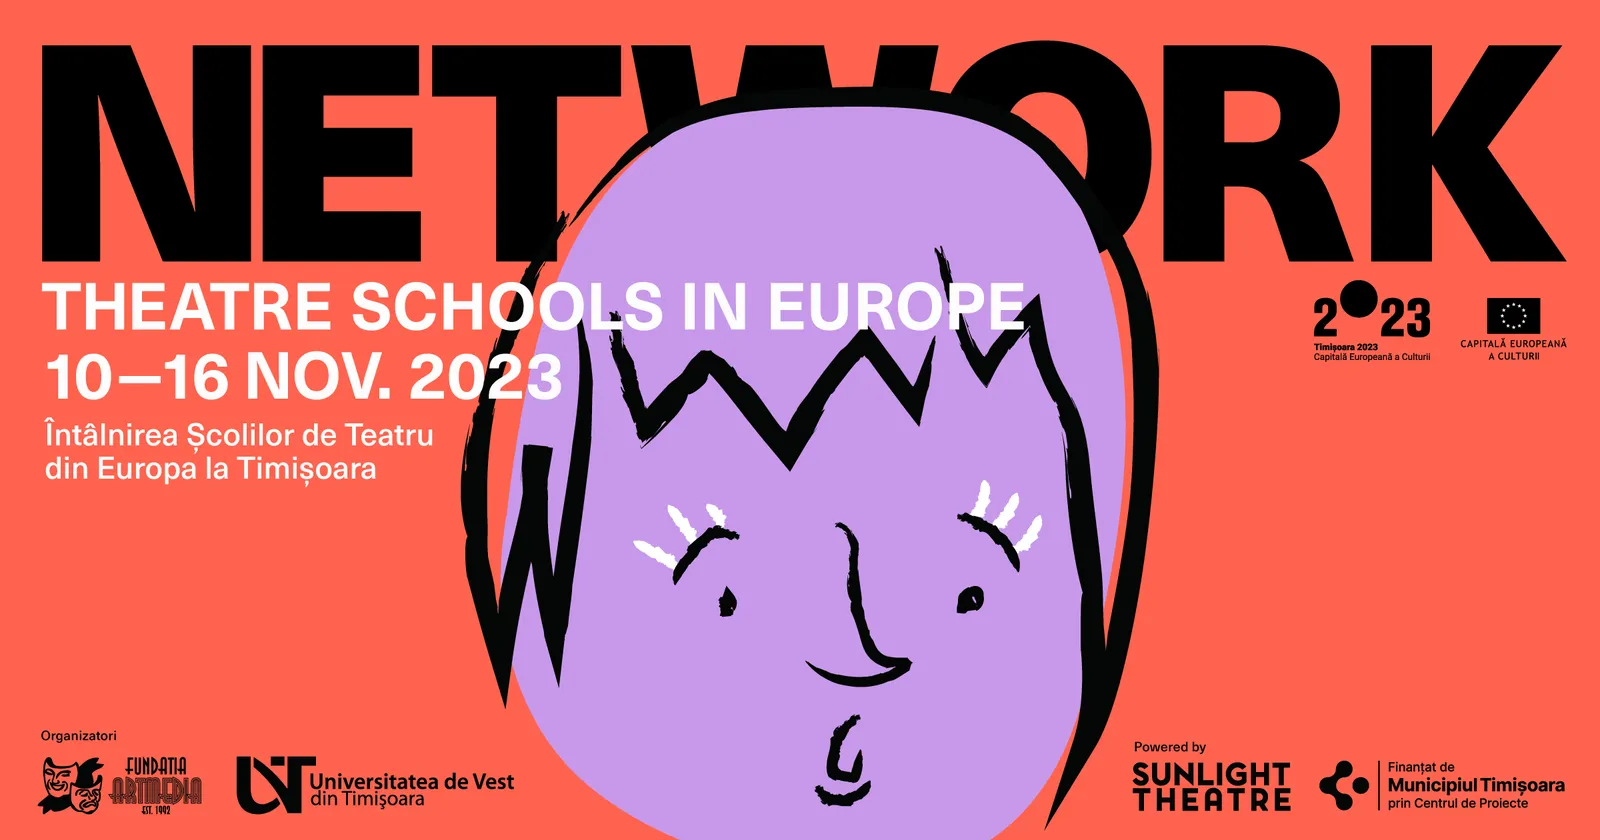 Network - Theatre Schools in Europe